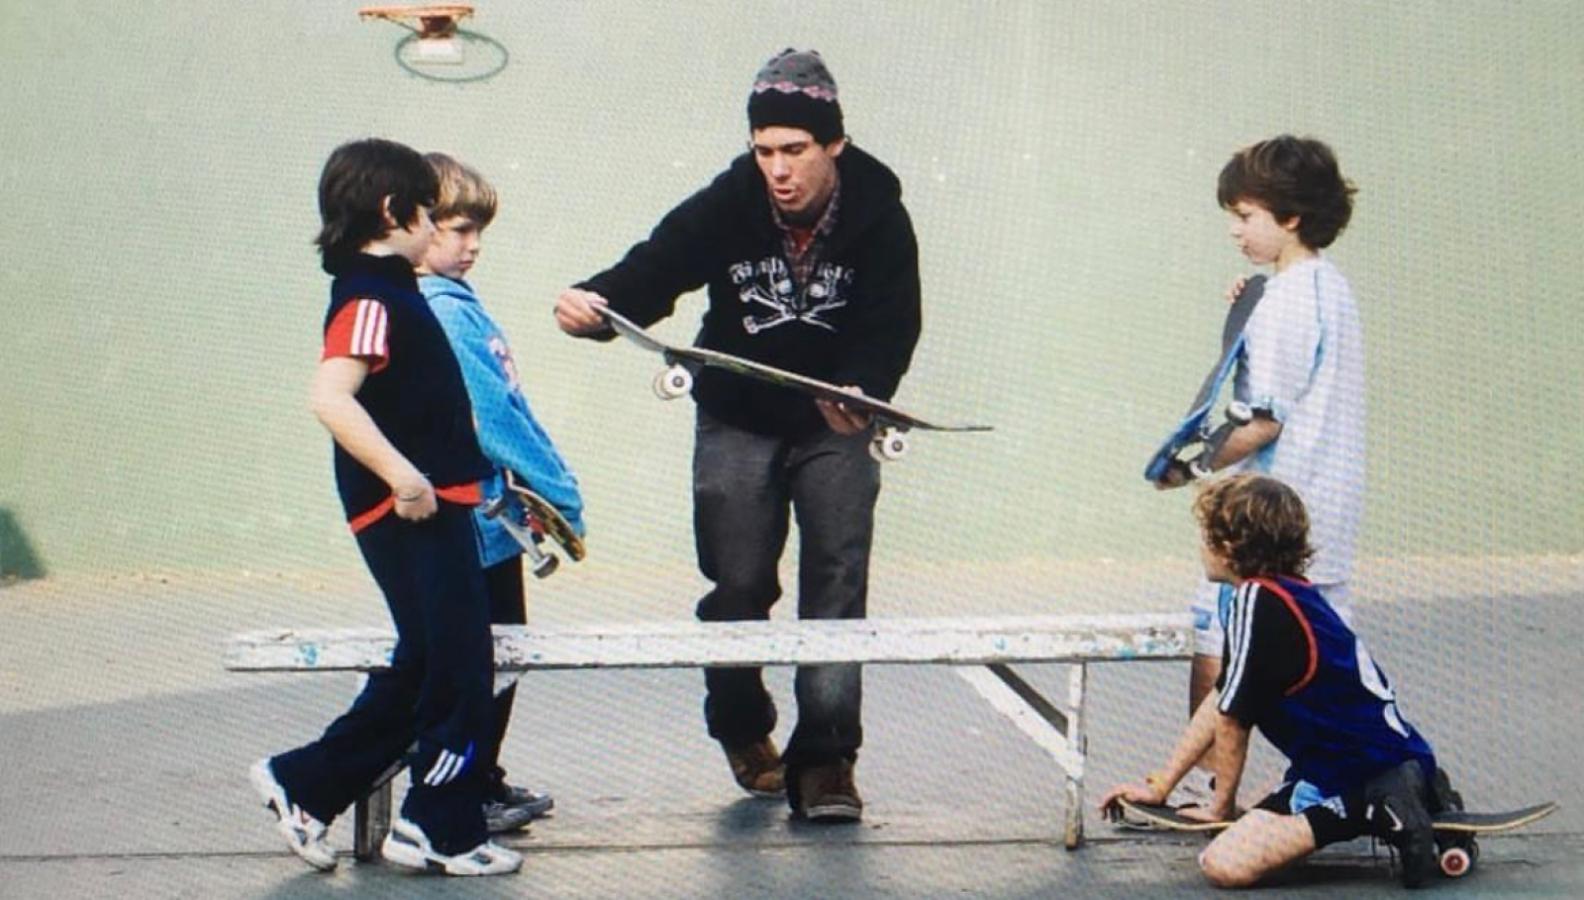 Imagen Martín fue pionero en dar clases de skate, allá por el 2000. Lo hizo durante casi una década y media.